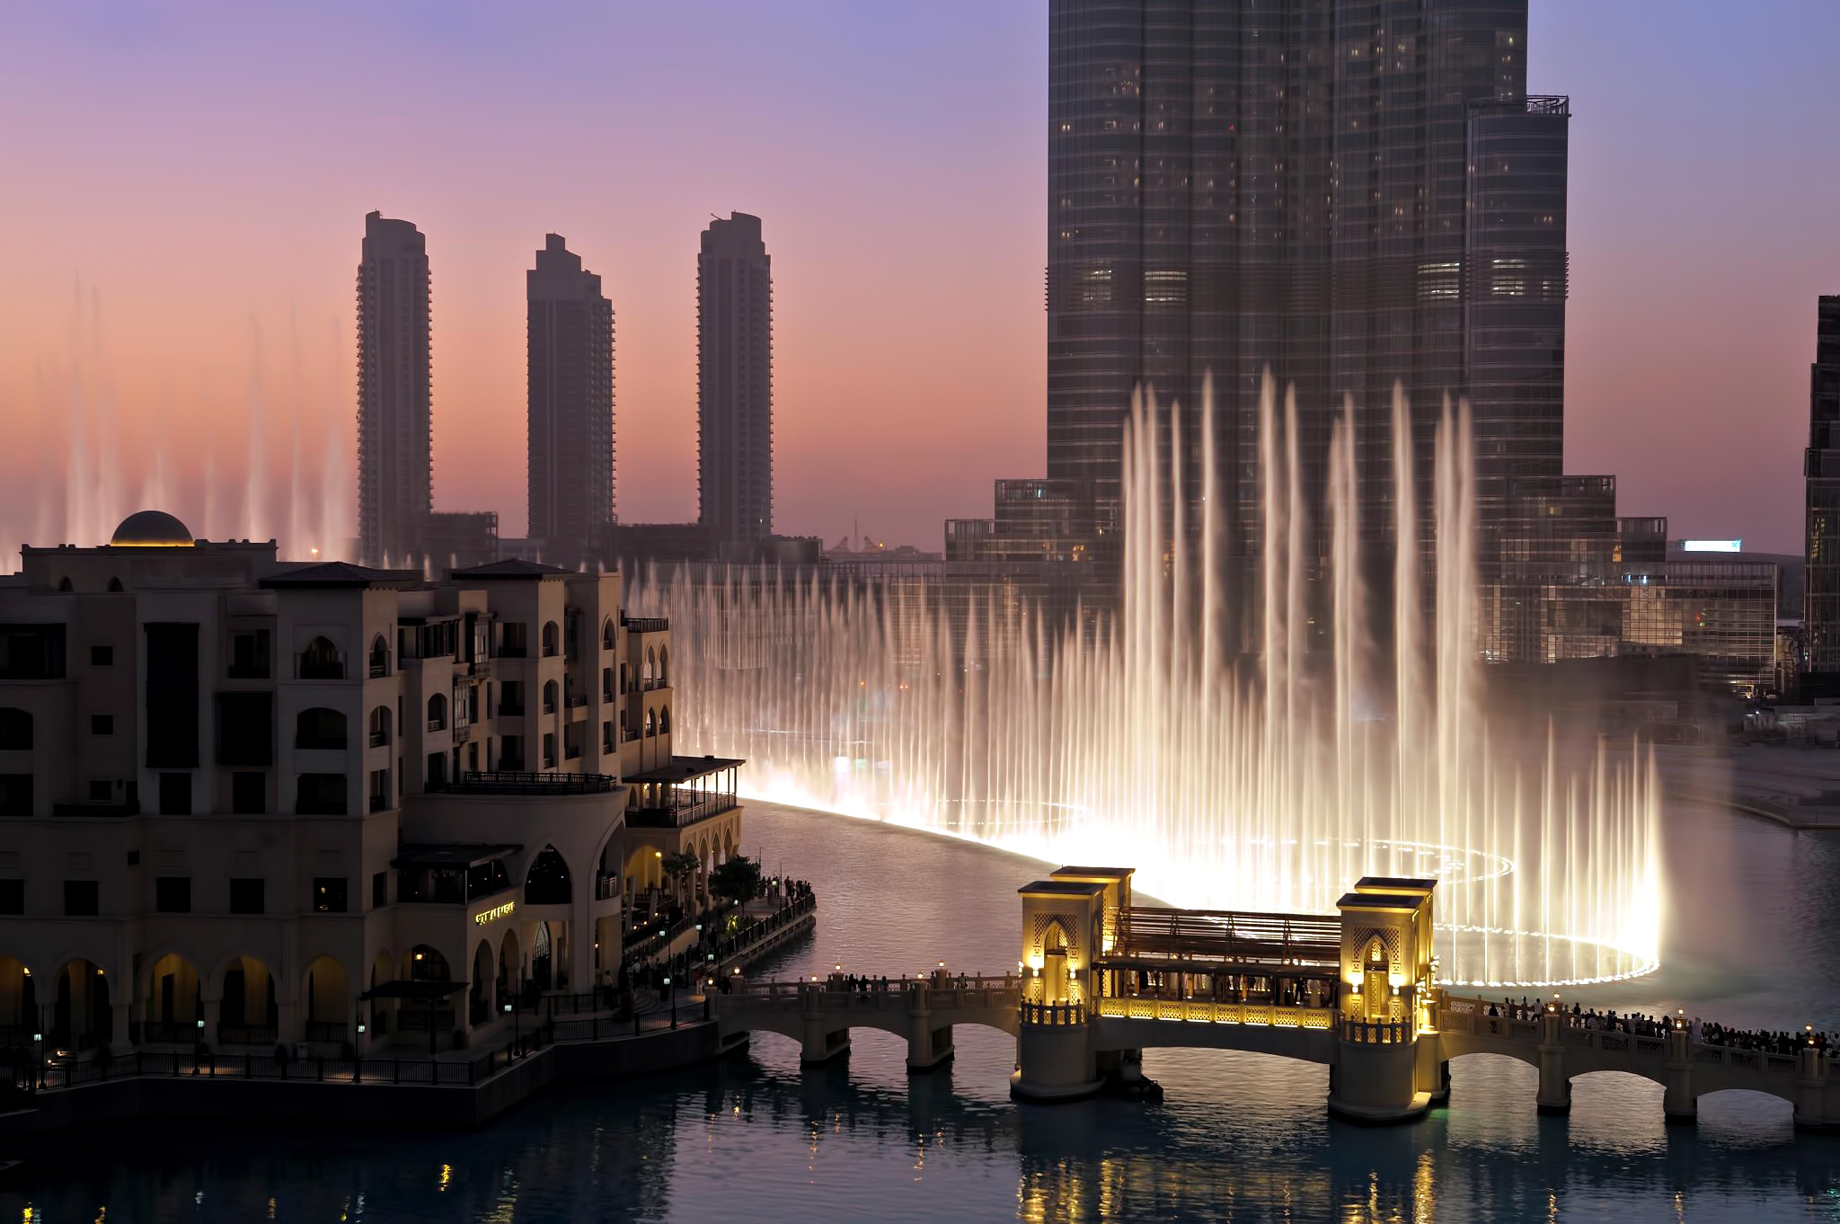 Armani Hotel Dubai – Burj Khalifa, Dubai, UAE – Dubai Fountain